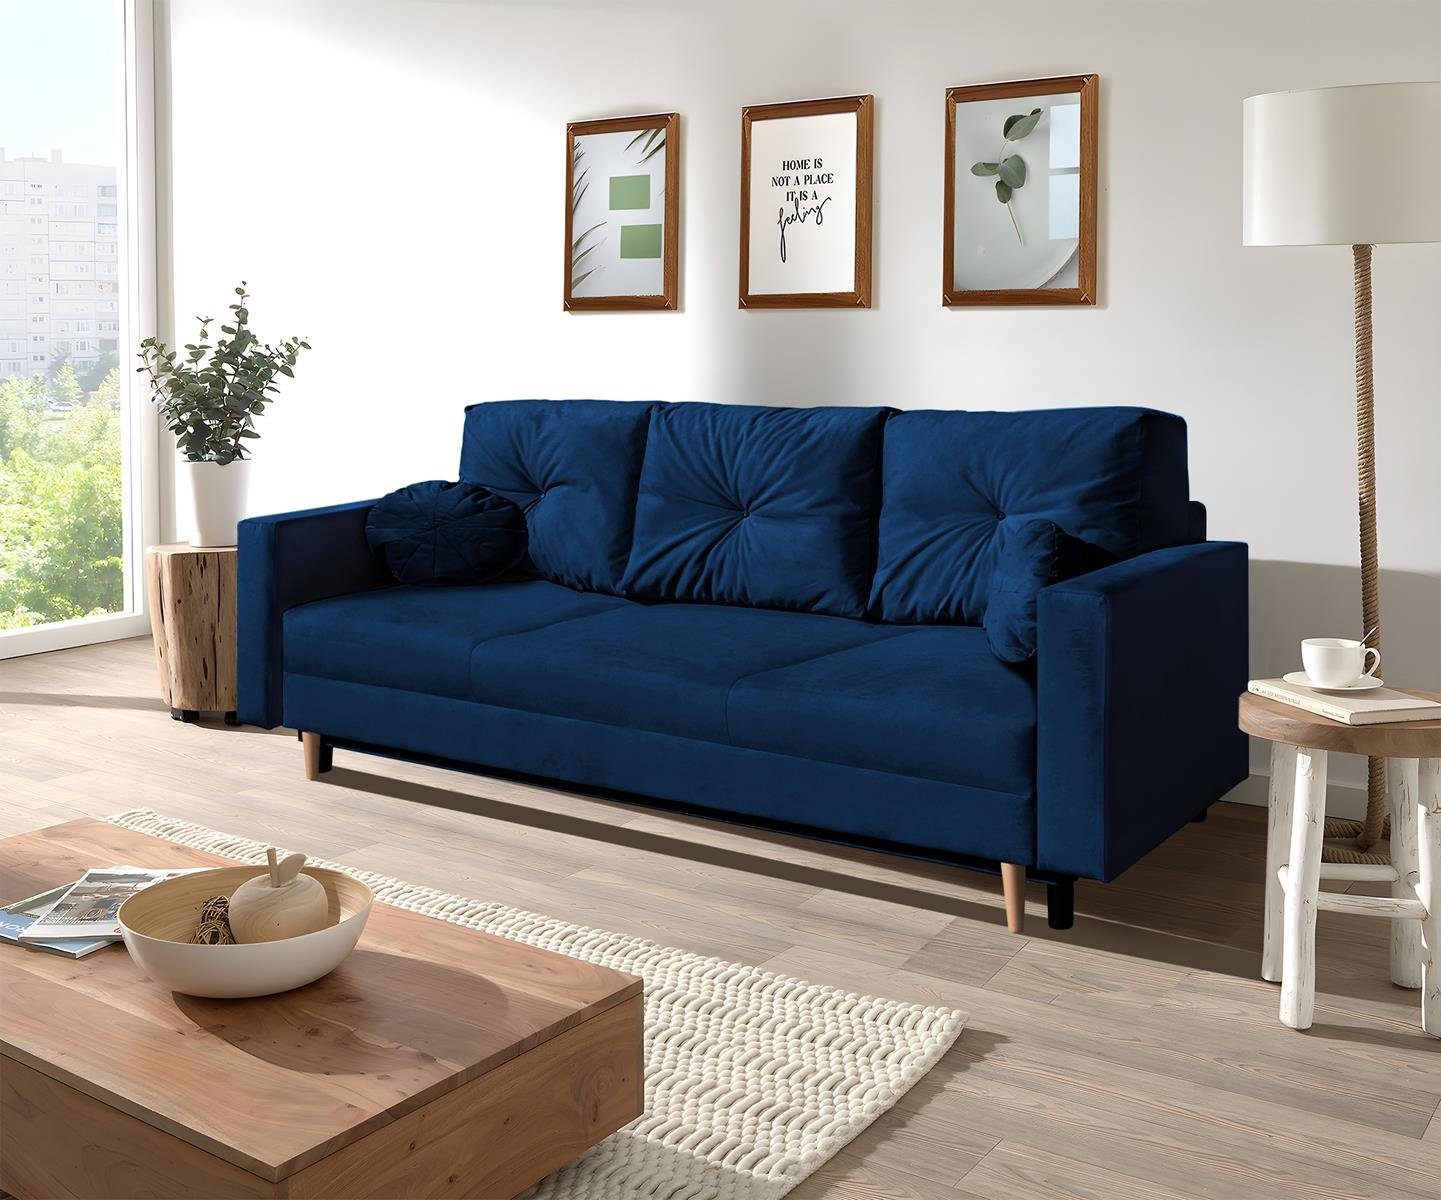 Beautysofa 3-Sitzer MILAN, skandinavisches Design, Wellenunterfederung, Bettkasten, Holzbeine, 3-Sitzer Sofa mit Relaxfunktion Dunkelblau (trinity 30)